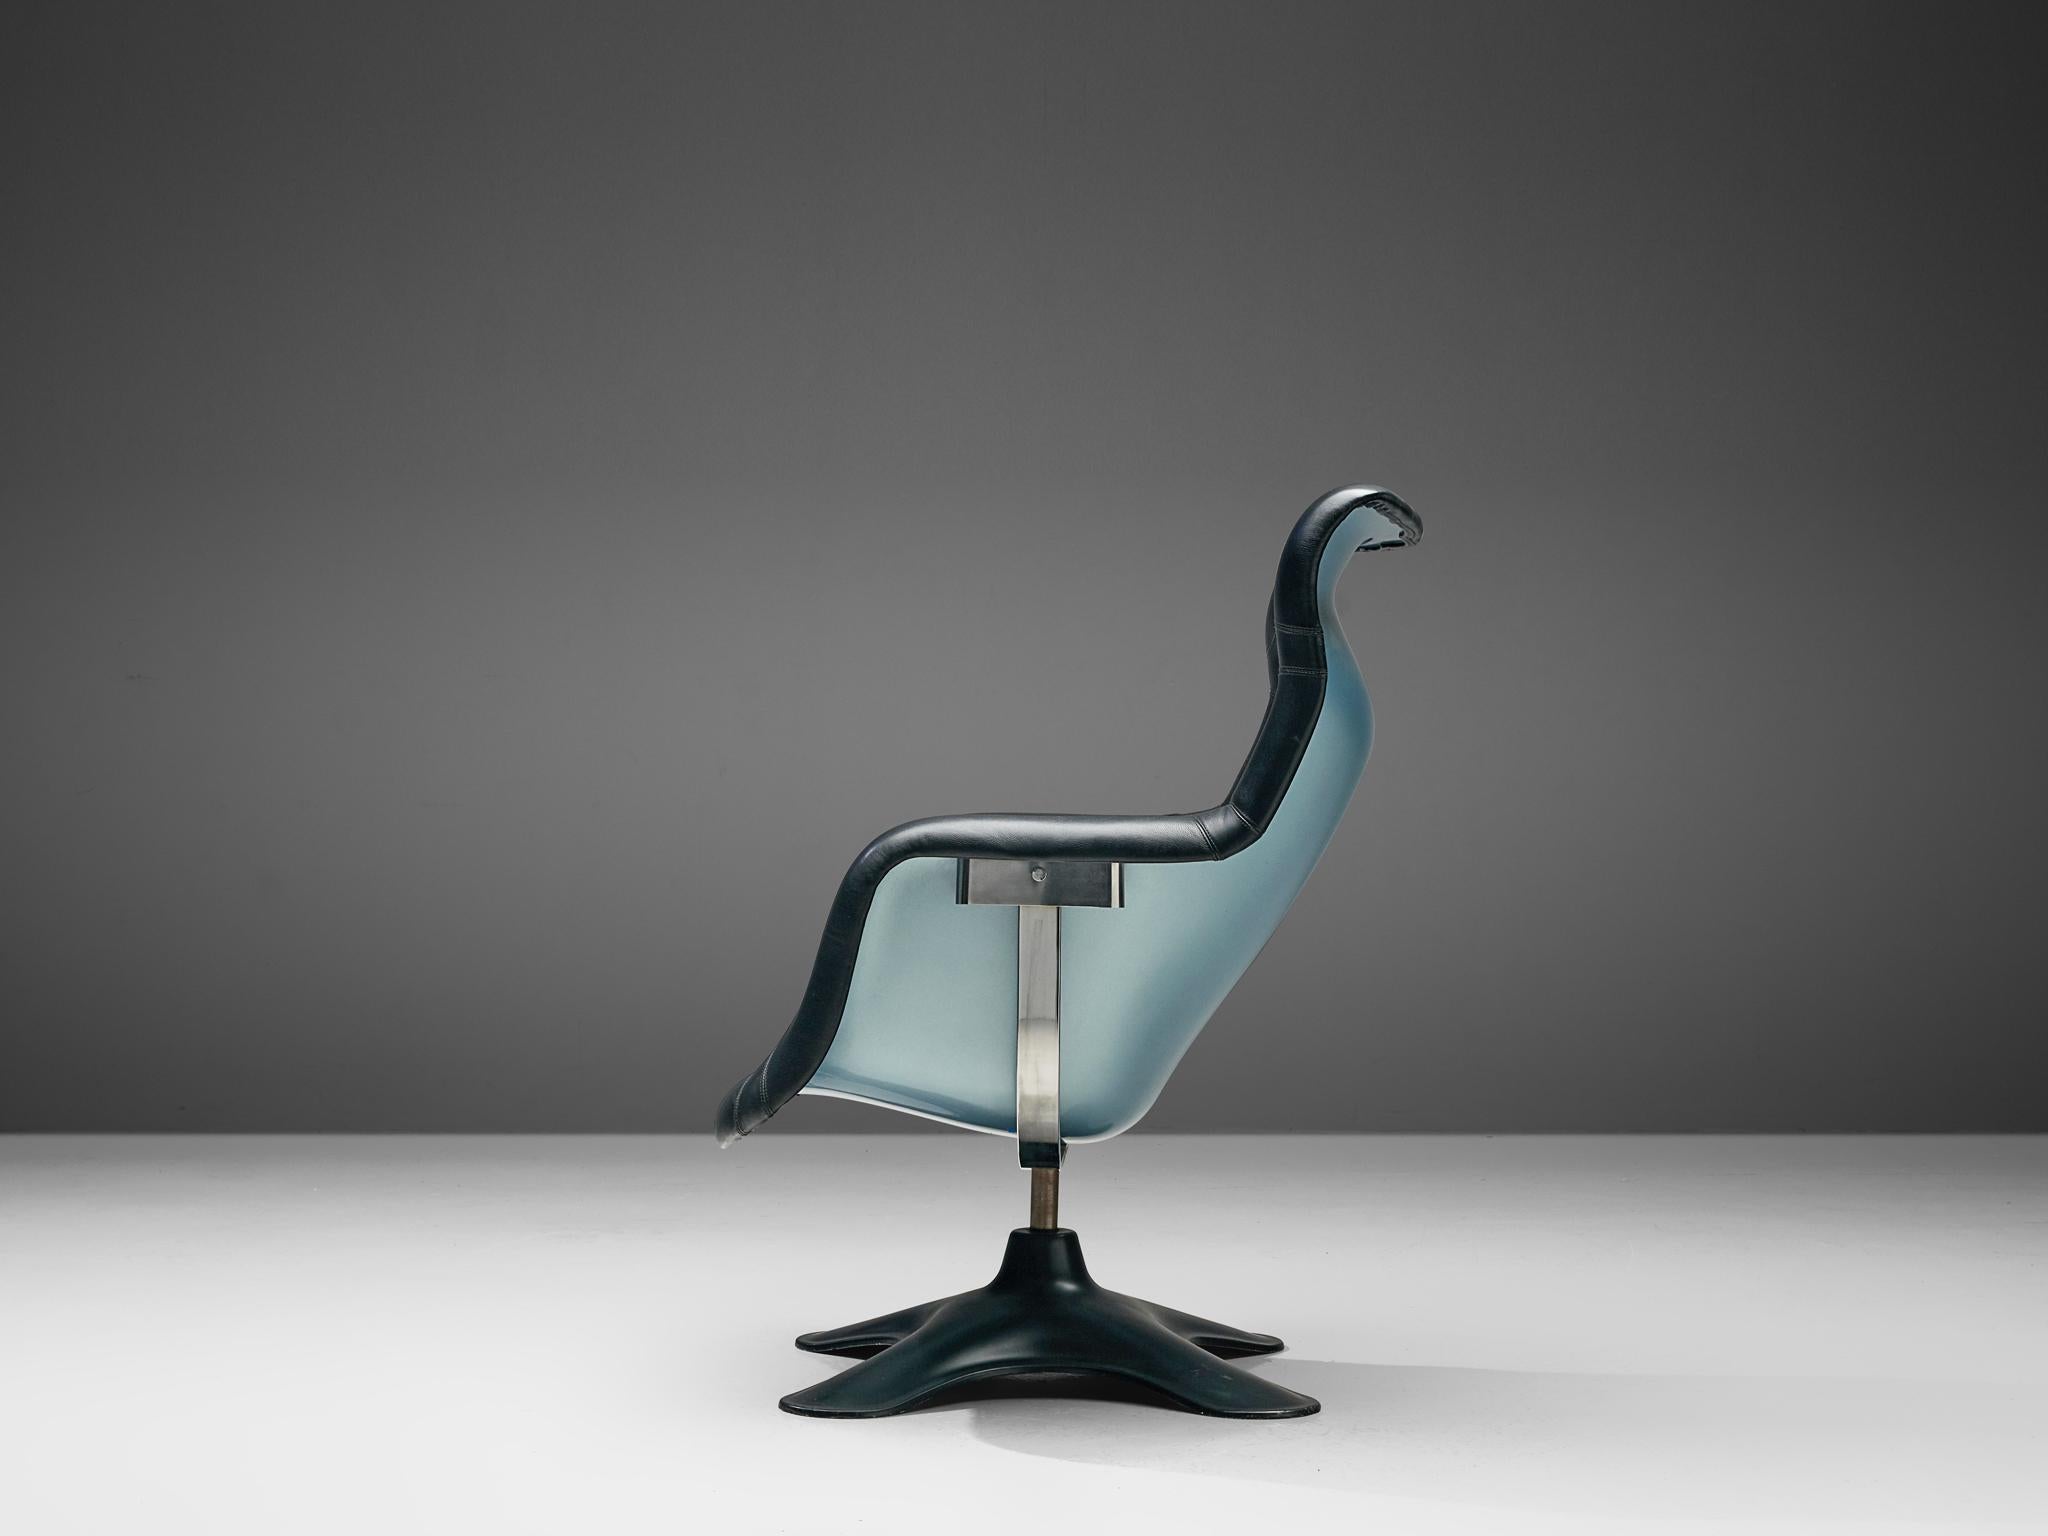 Yrjö Kukkapuro pour Haimi, chaise longue 'Karuselli', polyester renforcé de fibres de verre, acier chromé, cuir, Finlande, design 1963-1965

Conçue par l'artiste finlandais Yrjö Kukkapuro, cette chaise longue présente une forme organique. Fabriquée